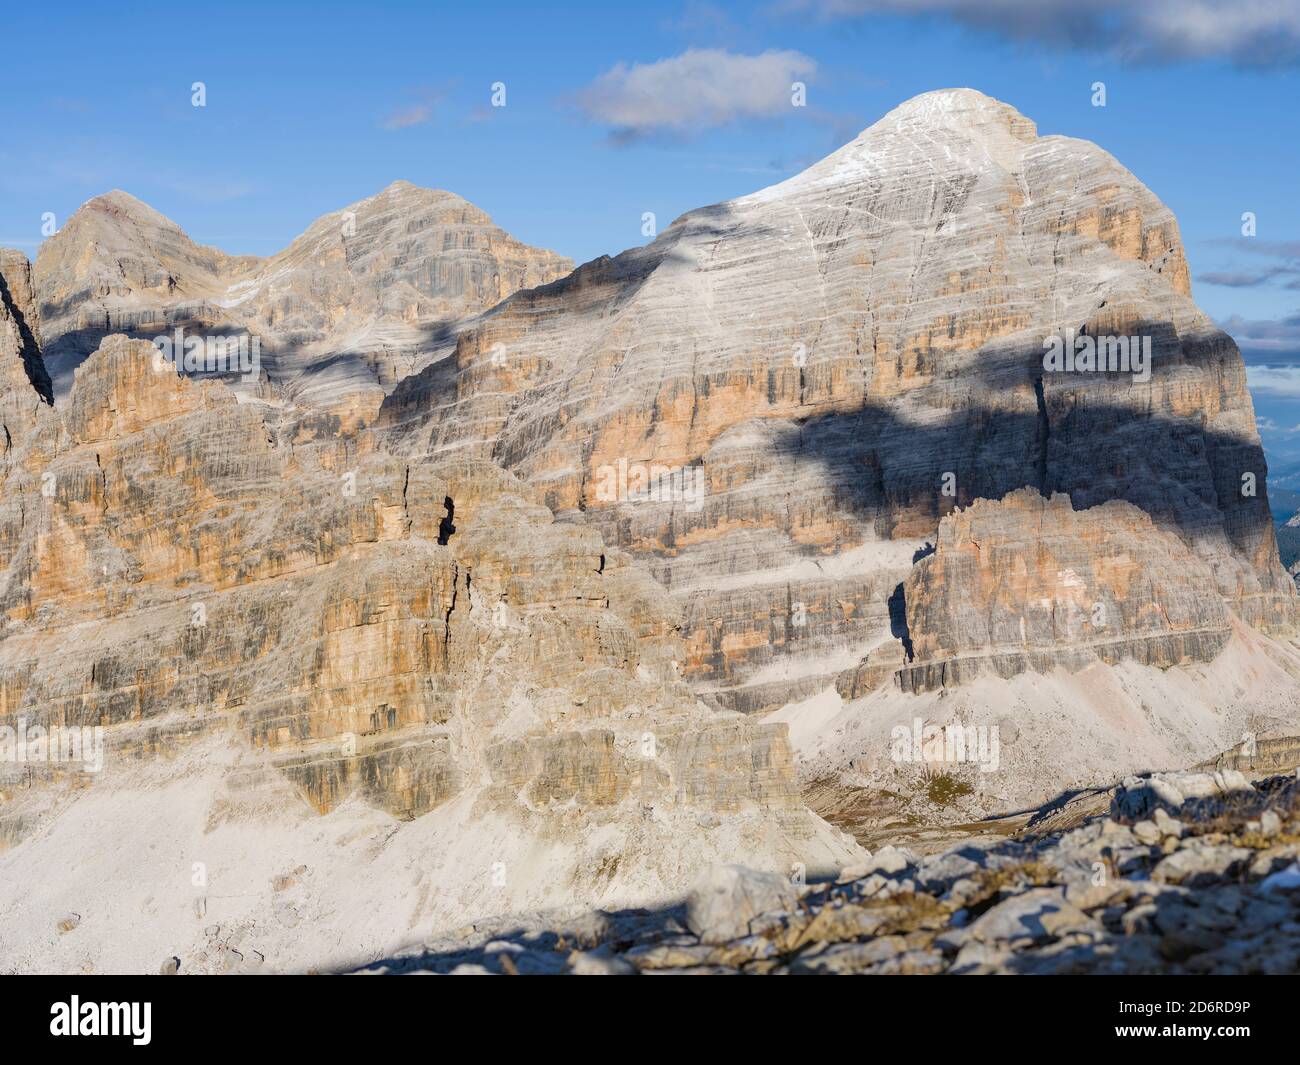 Les monts Fanes et les sommets du Tofane près du mont Lagazuoi dans les Dolomites. Les Dolomites sont classés au patrimoine mondial de l'UNESCO. europe, cen Banque D'Images